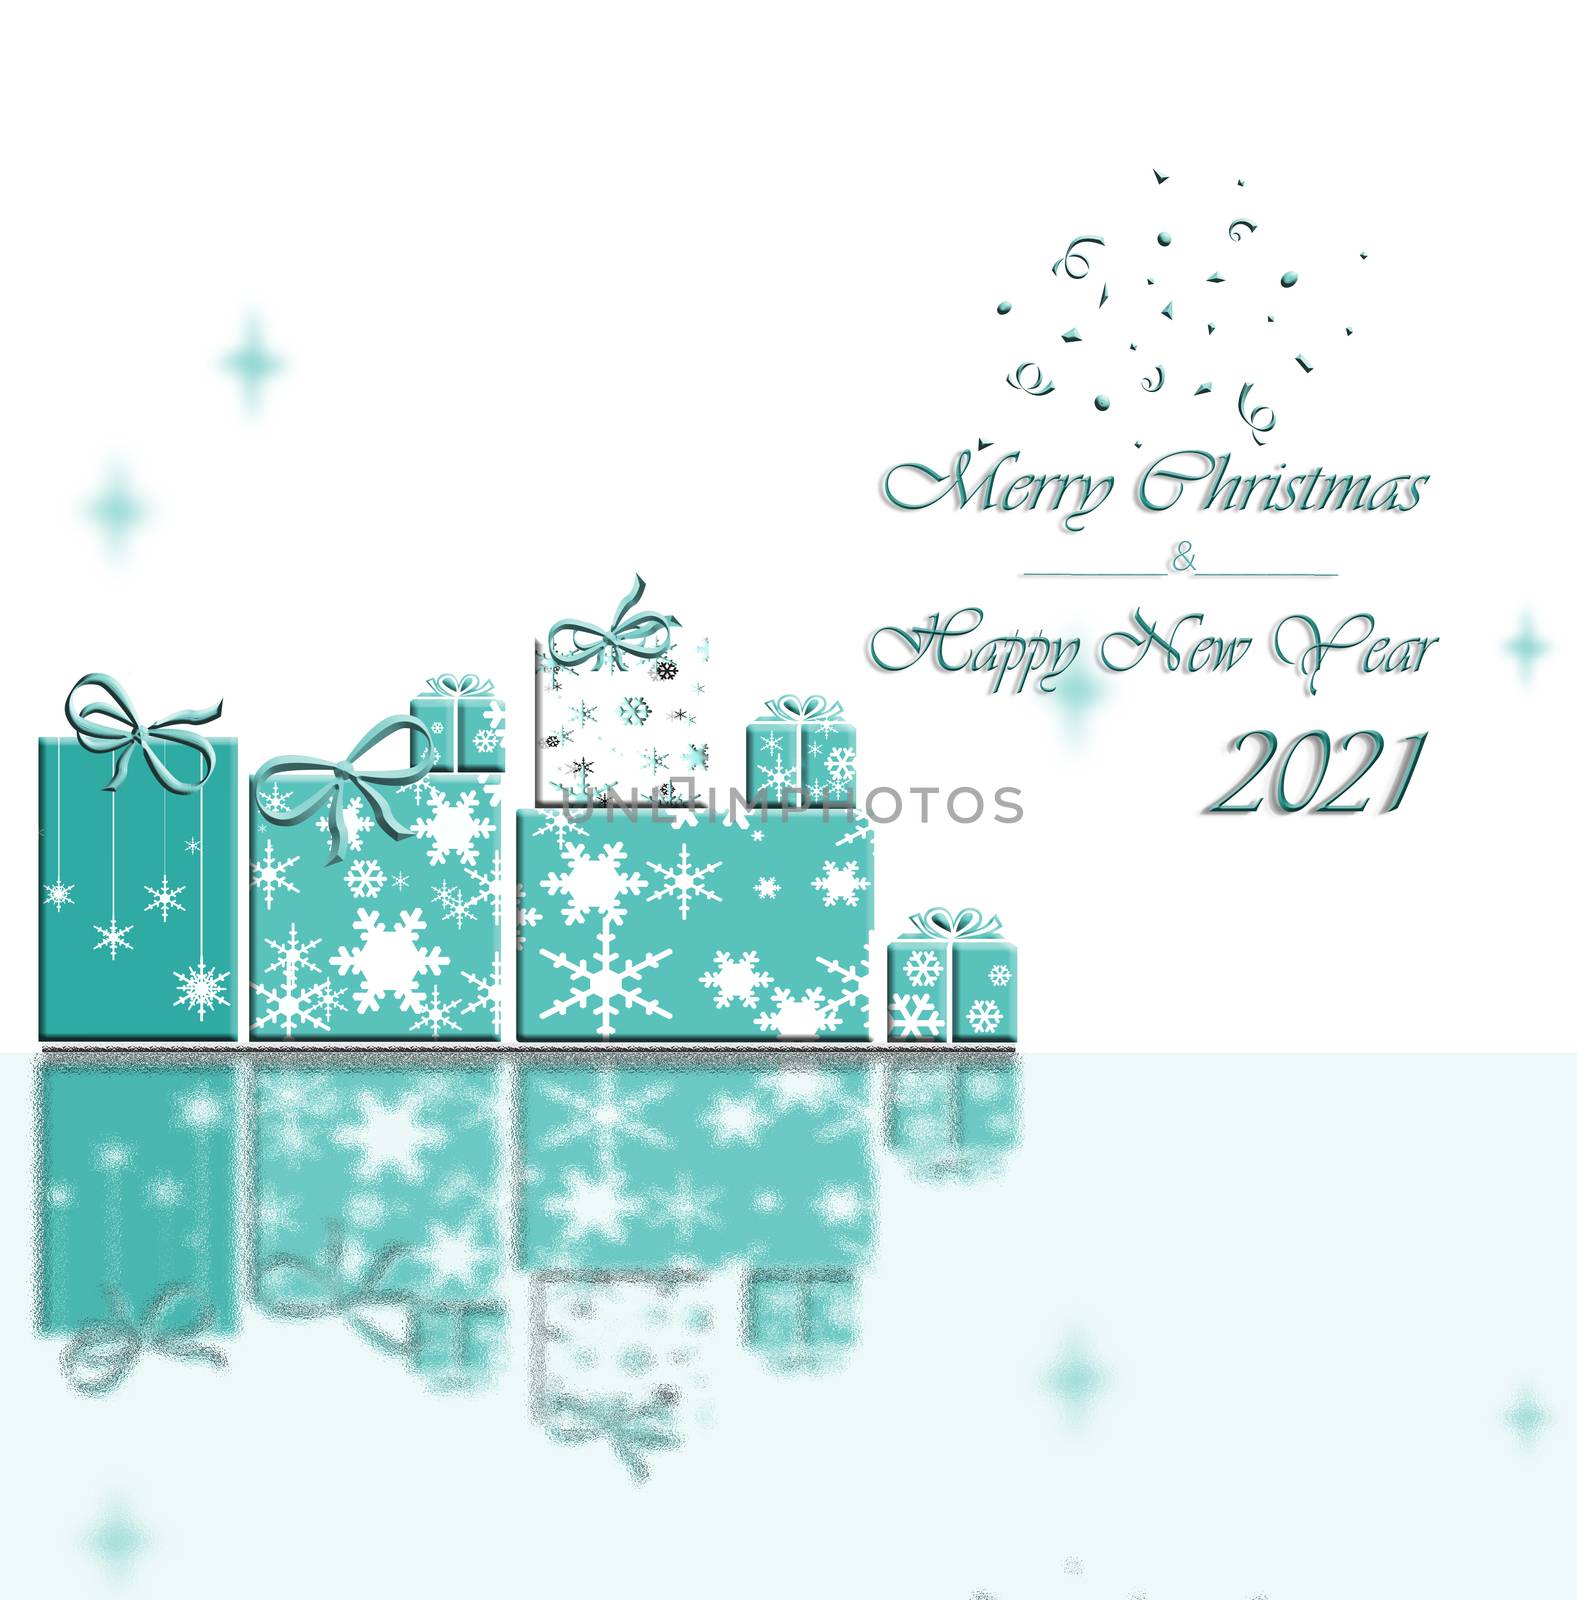 Happy New Year 2021 by NelliPolk